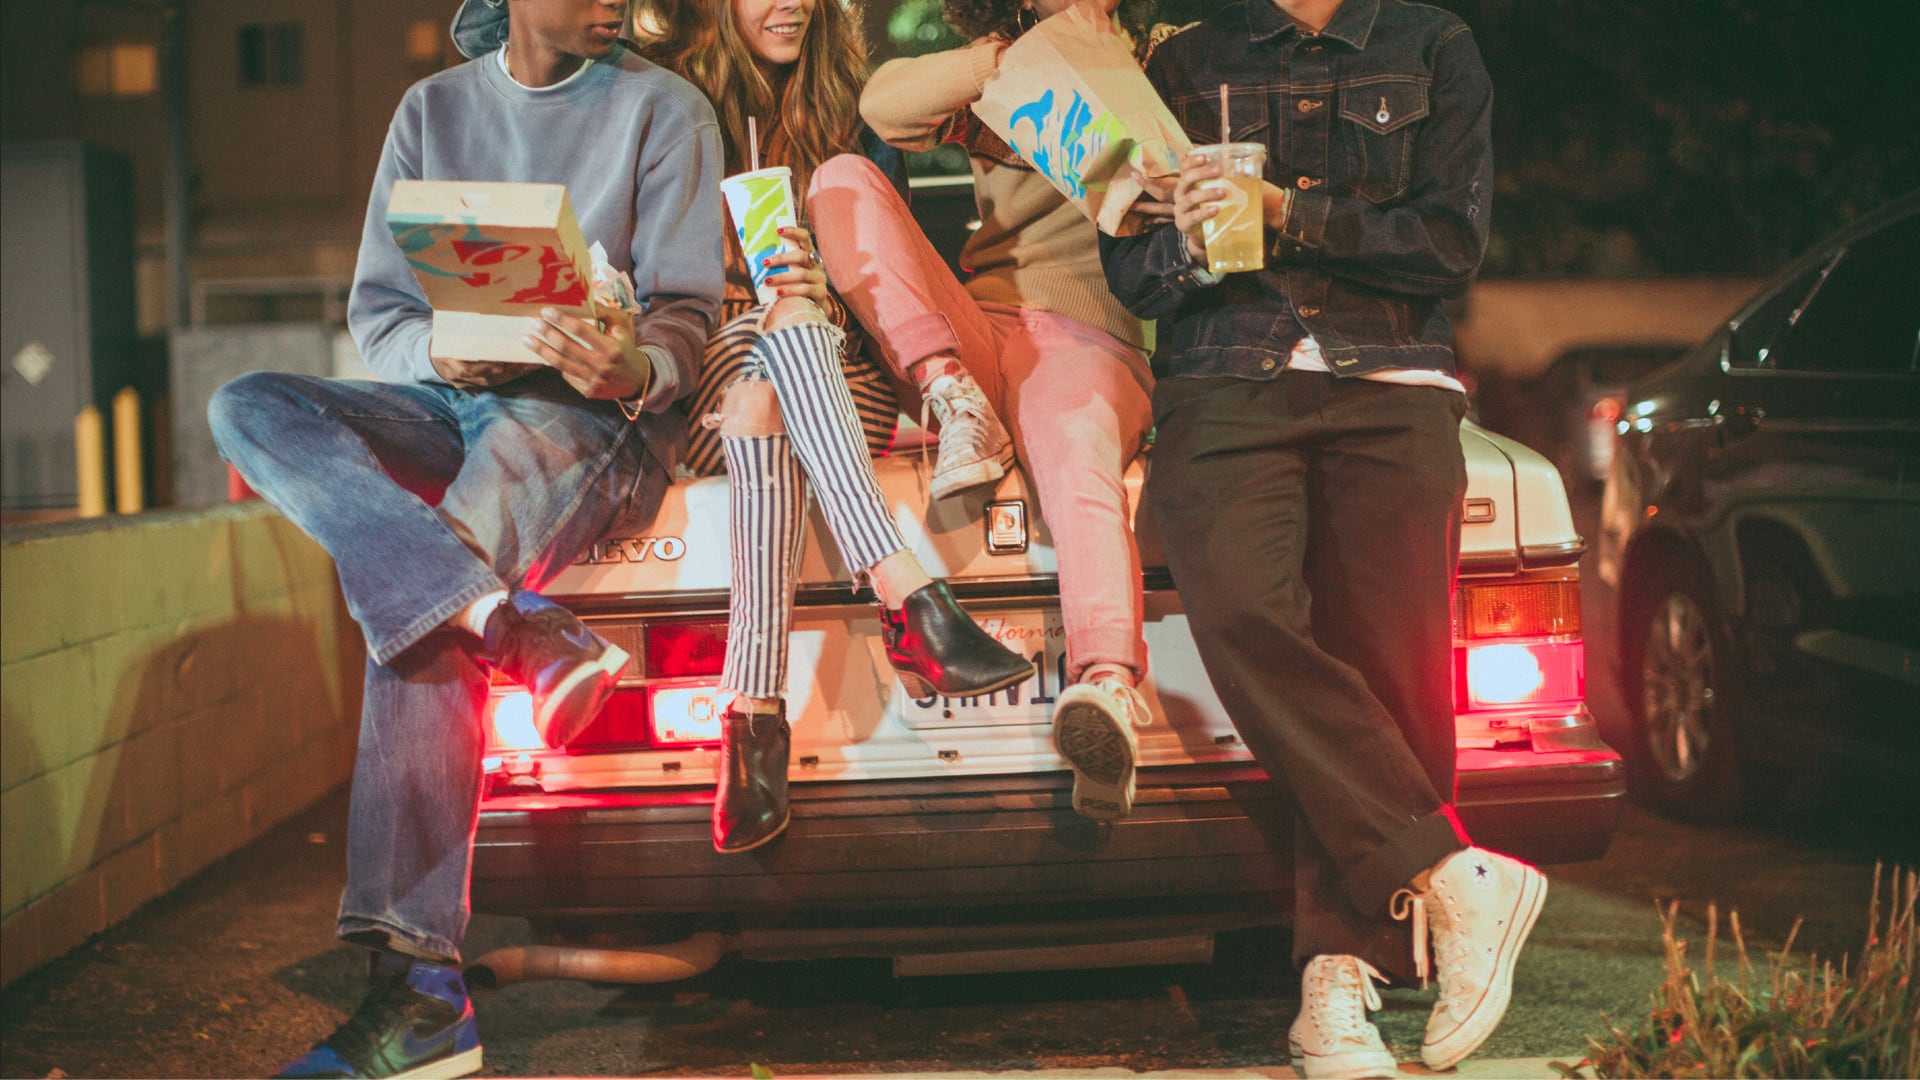 Drei junge Leute, die sich an den Kofferraum eines Autos lehnen und Tacos und Burritos von Taco Bell essen.